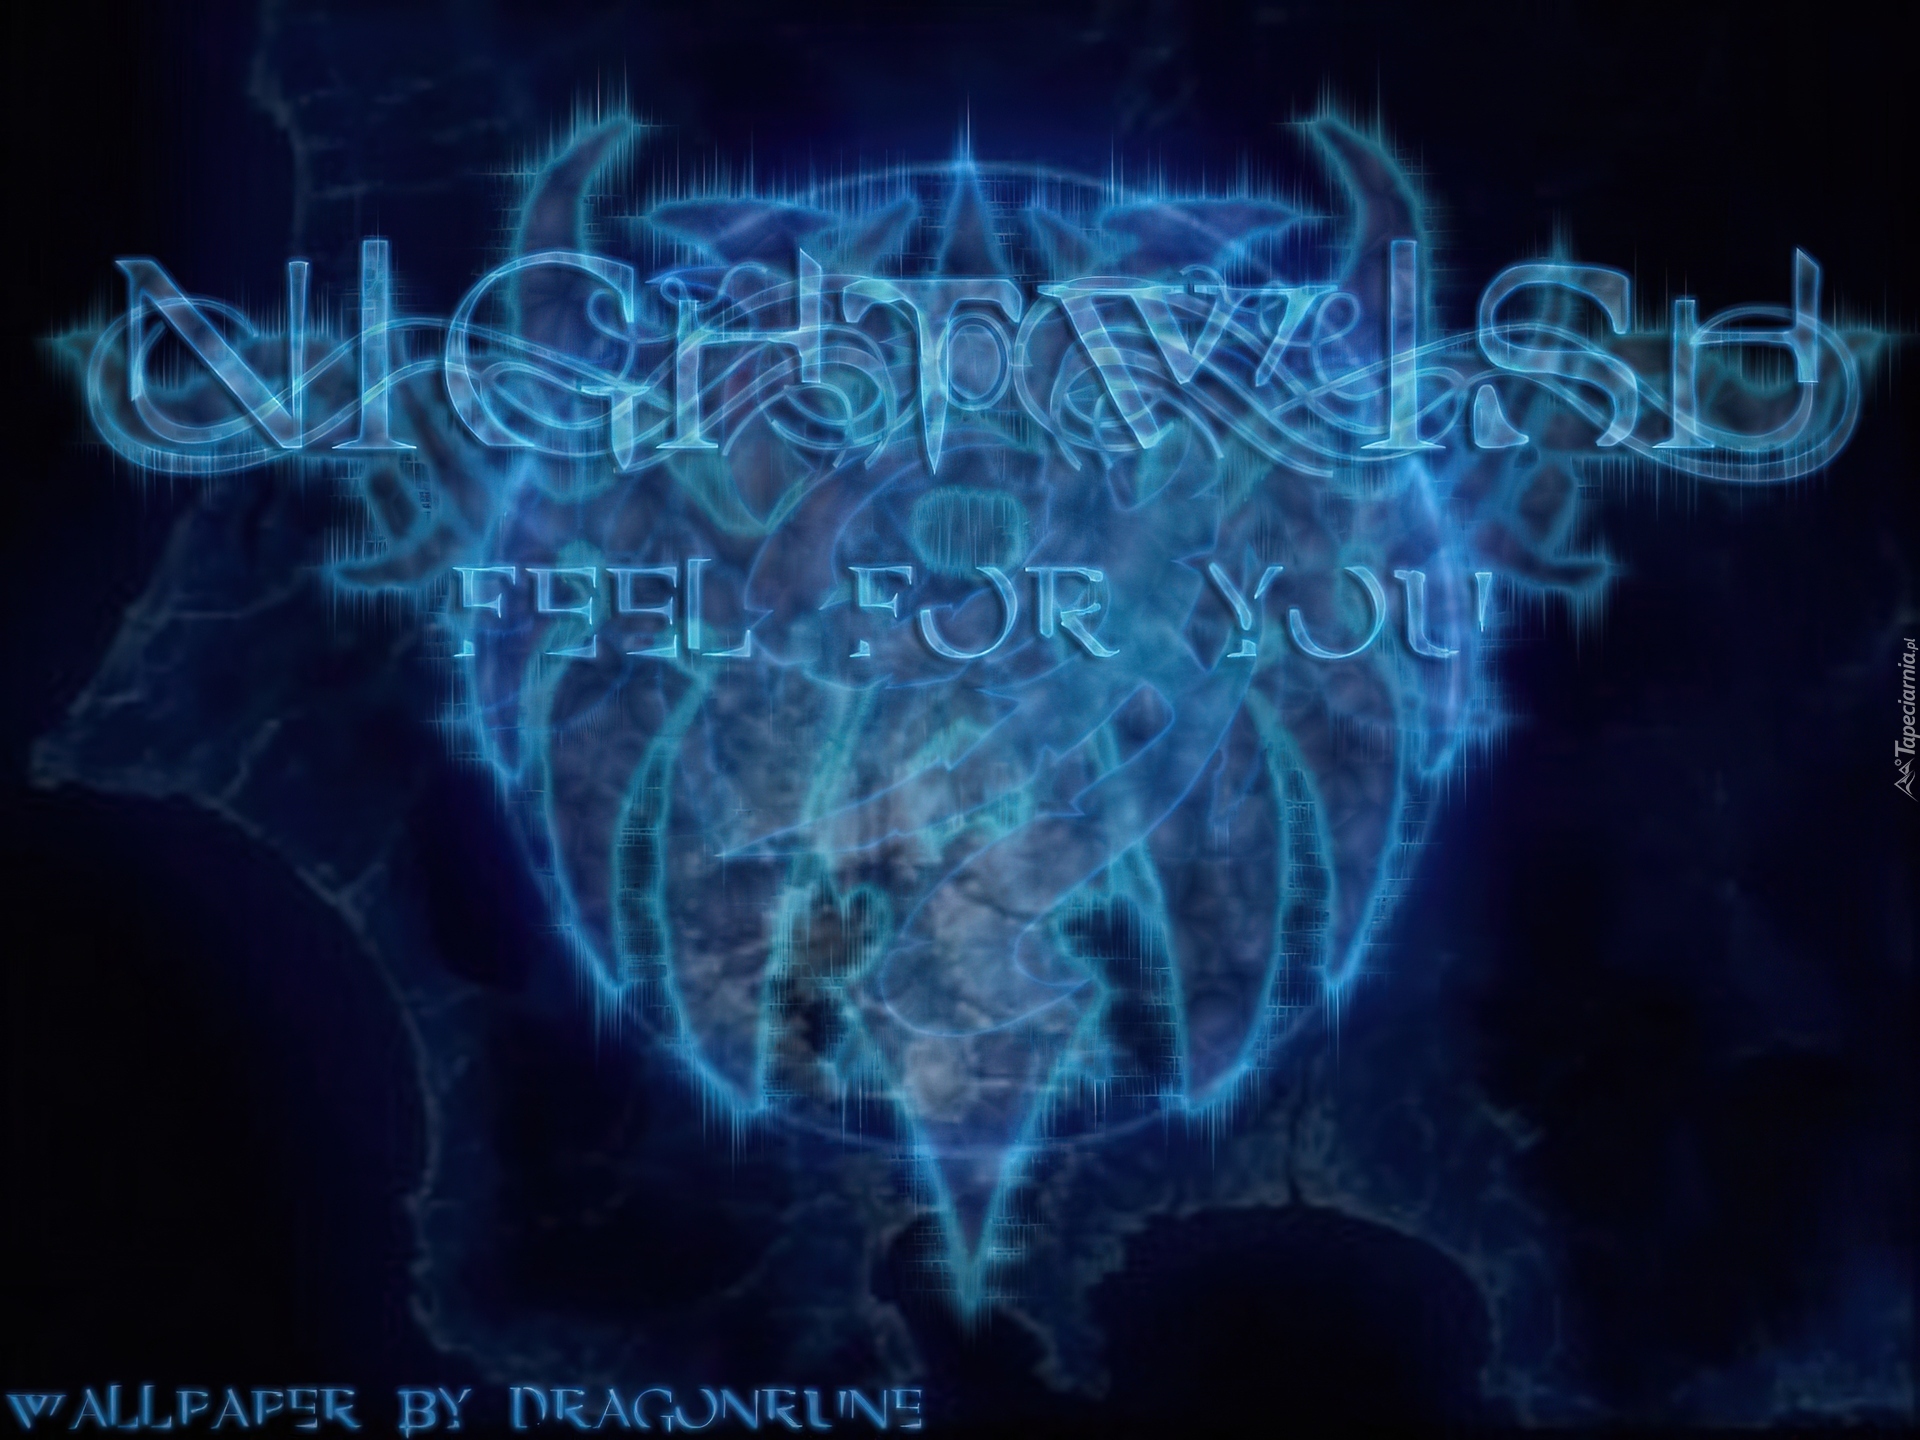 Nightwish,Feel for you